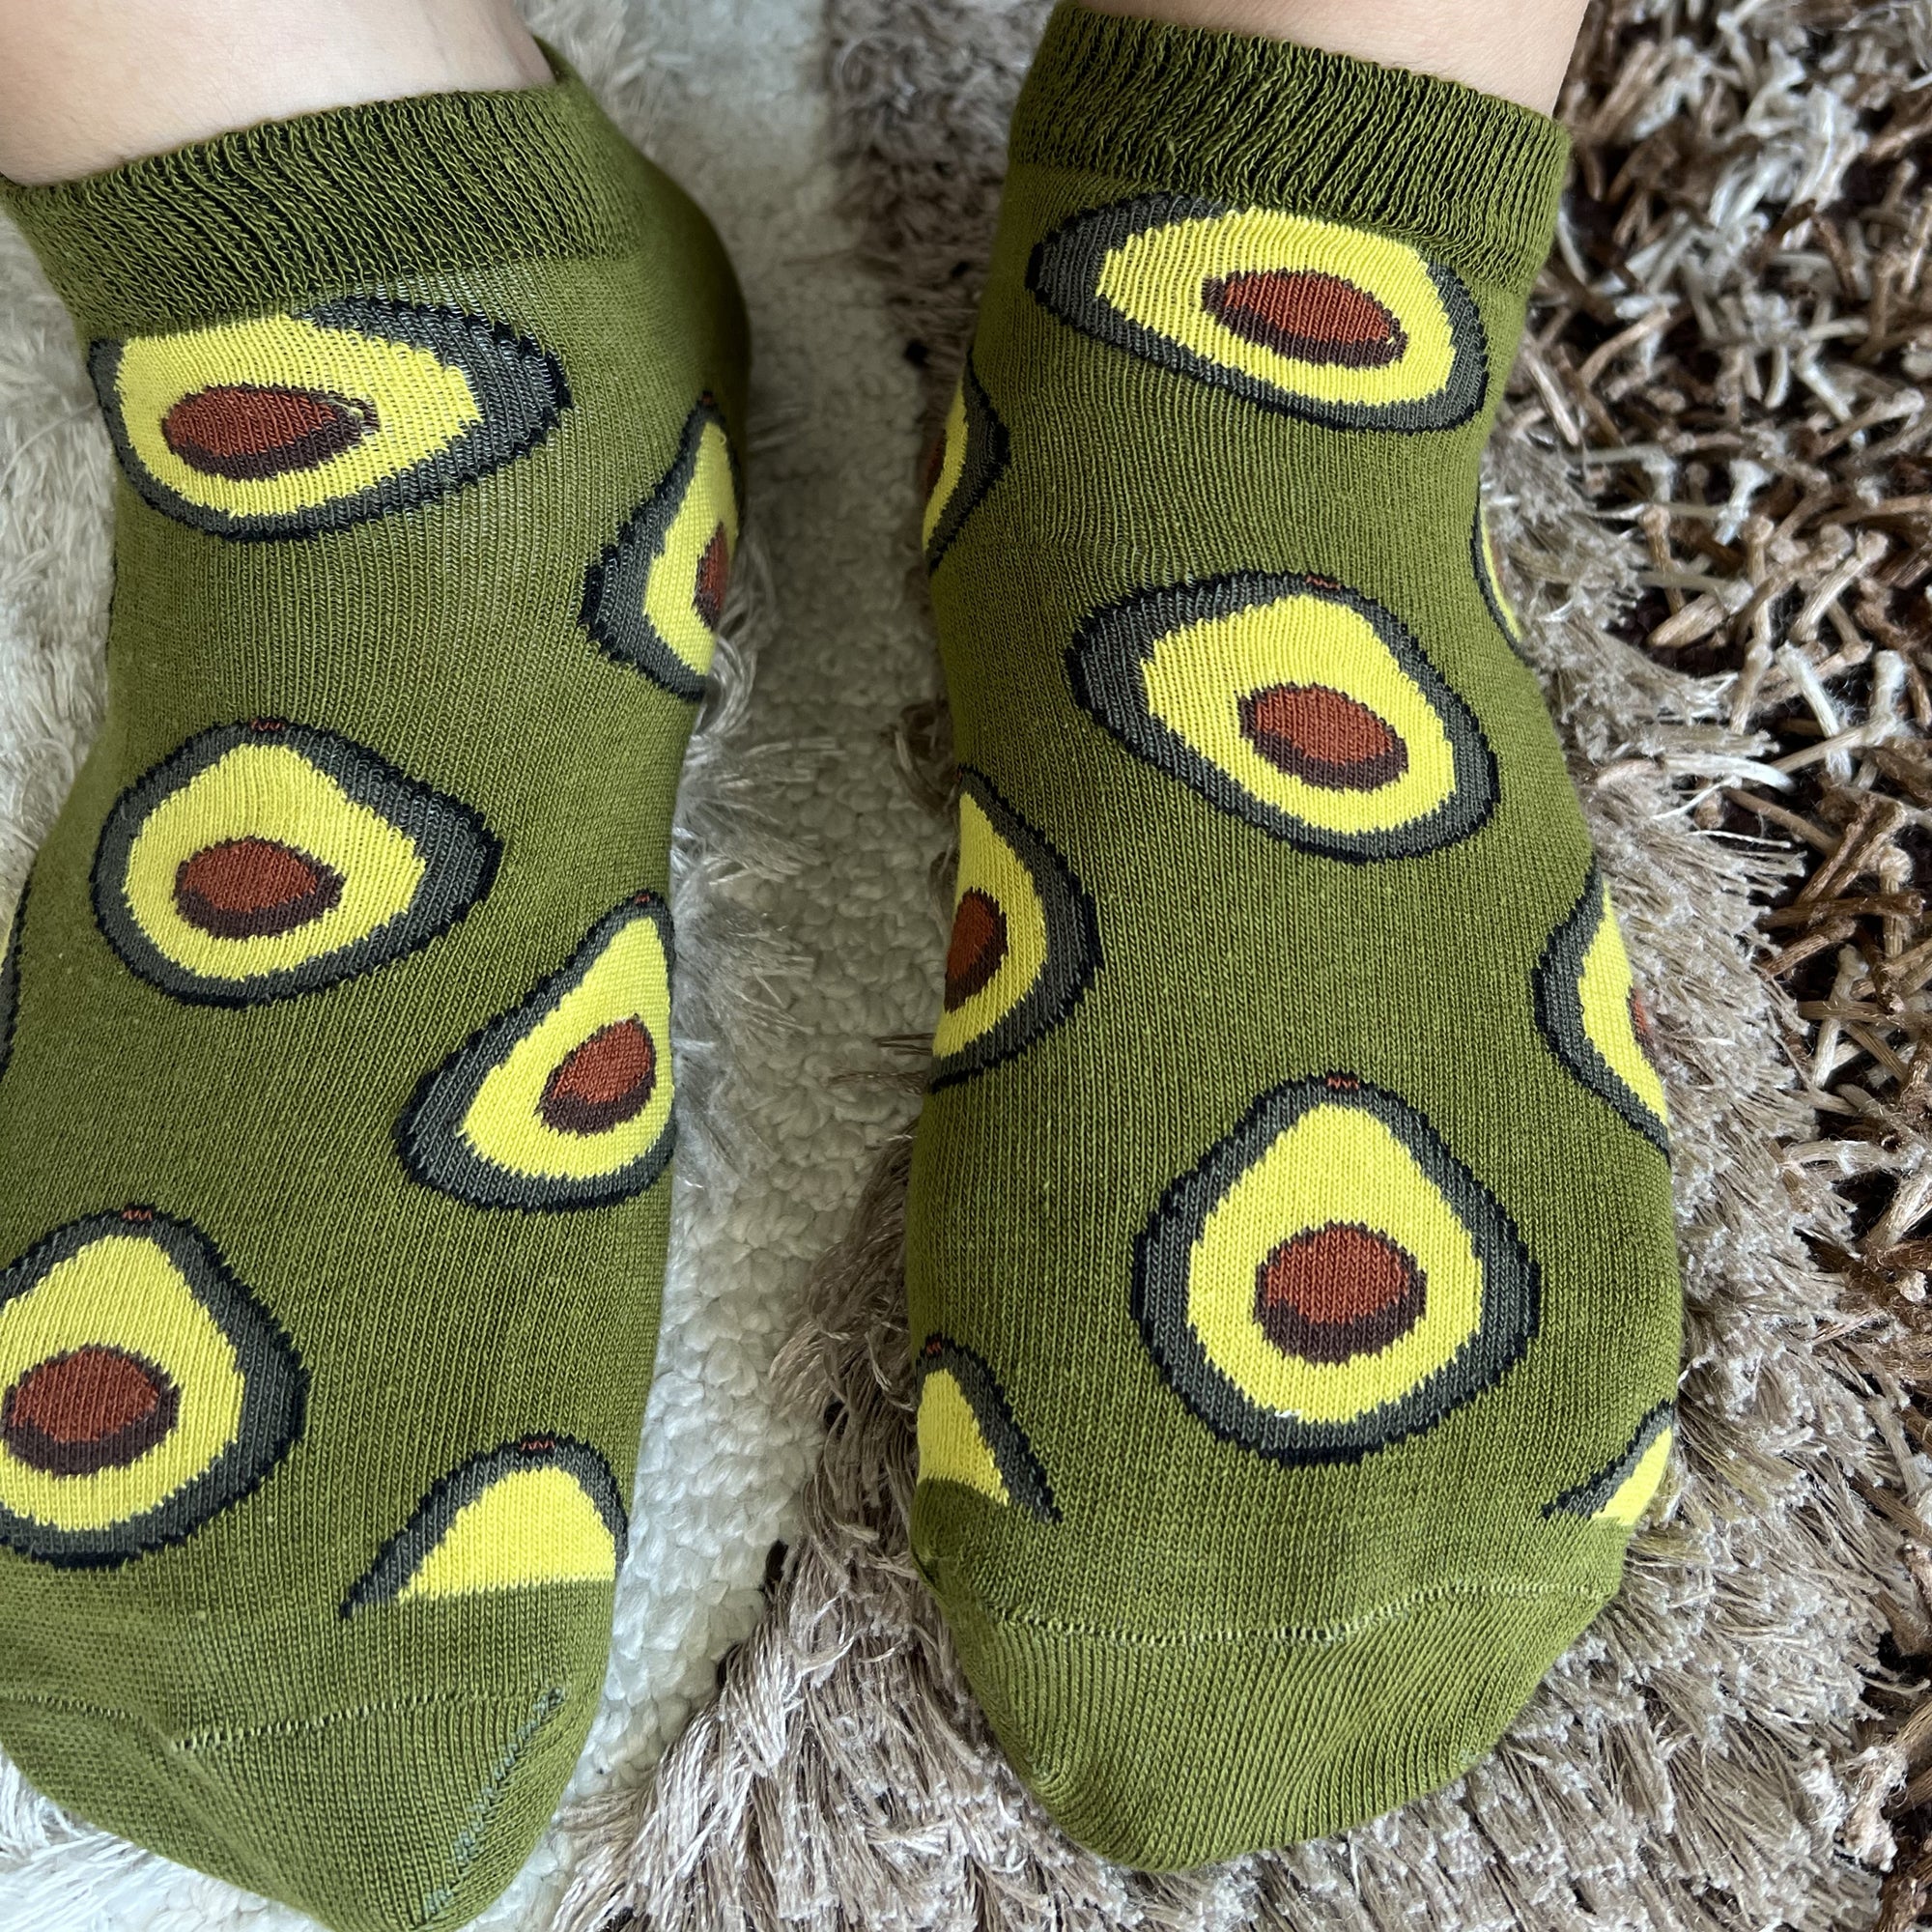 Louluu Avocado Low Cut Socks